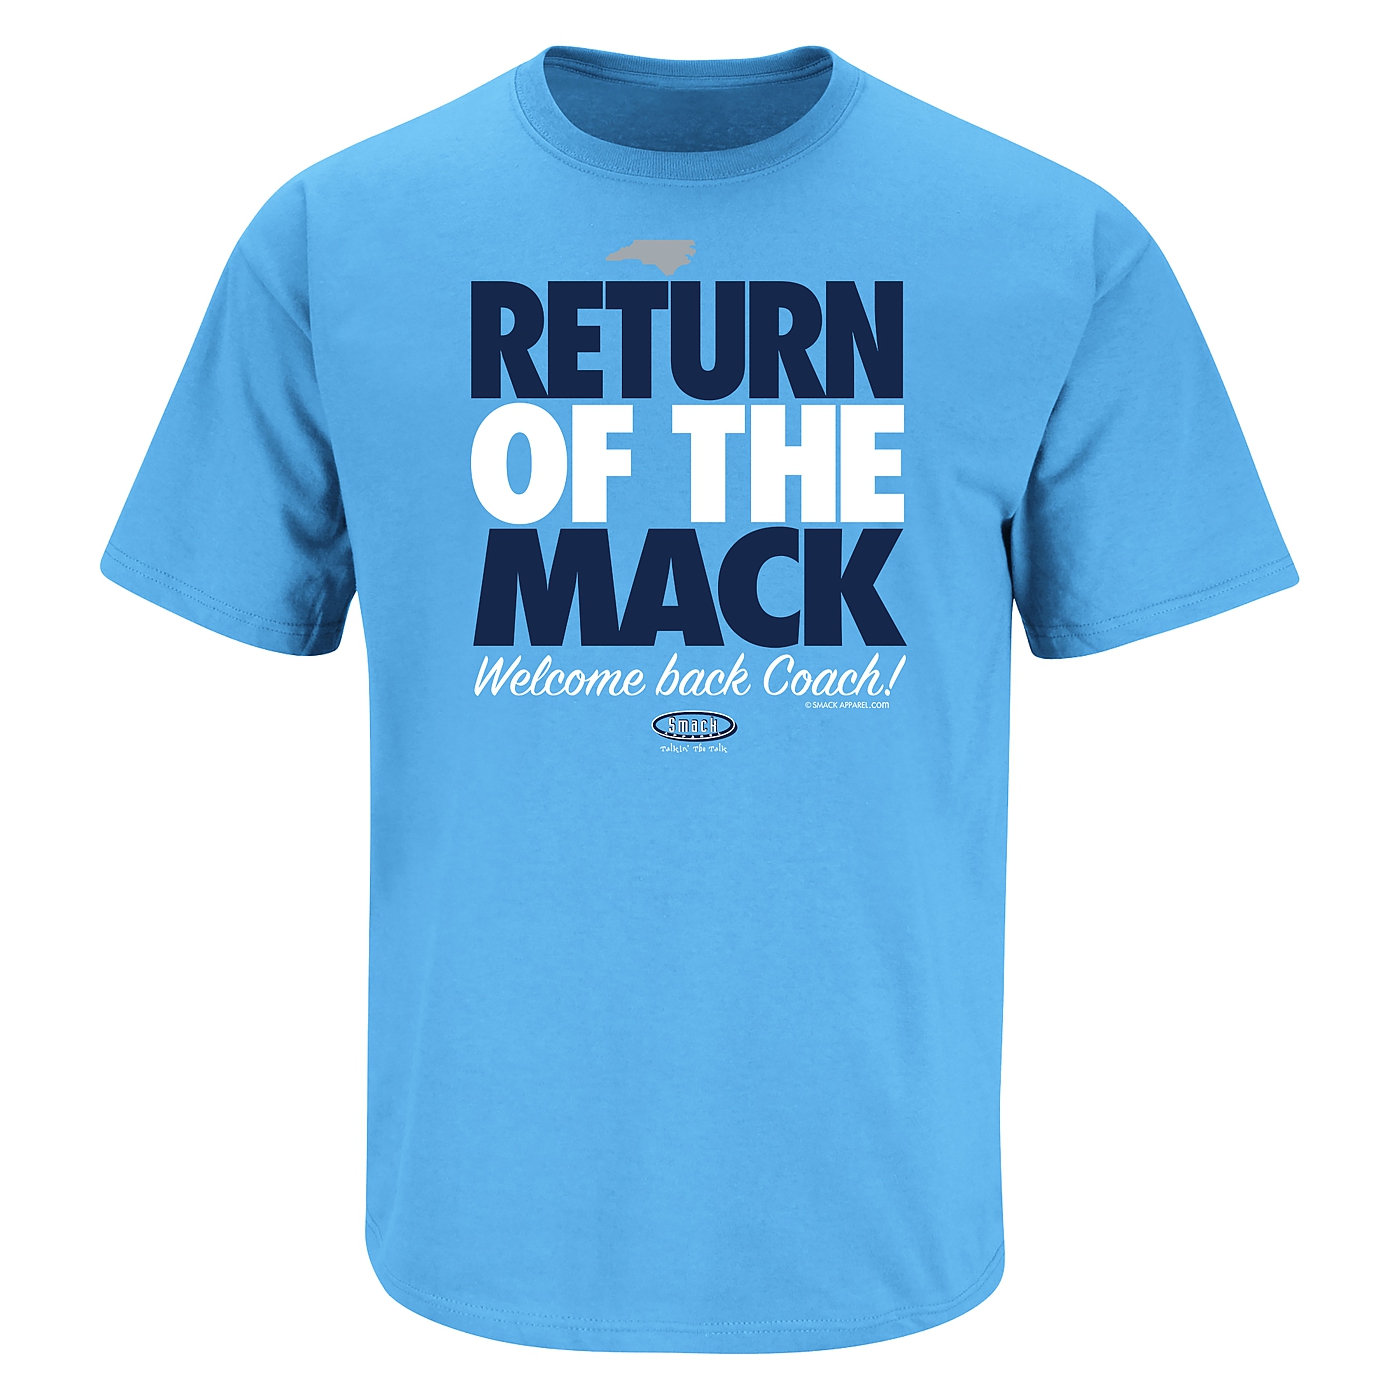 mack is back shirt unc